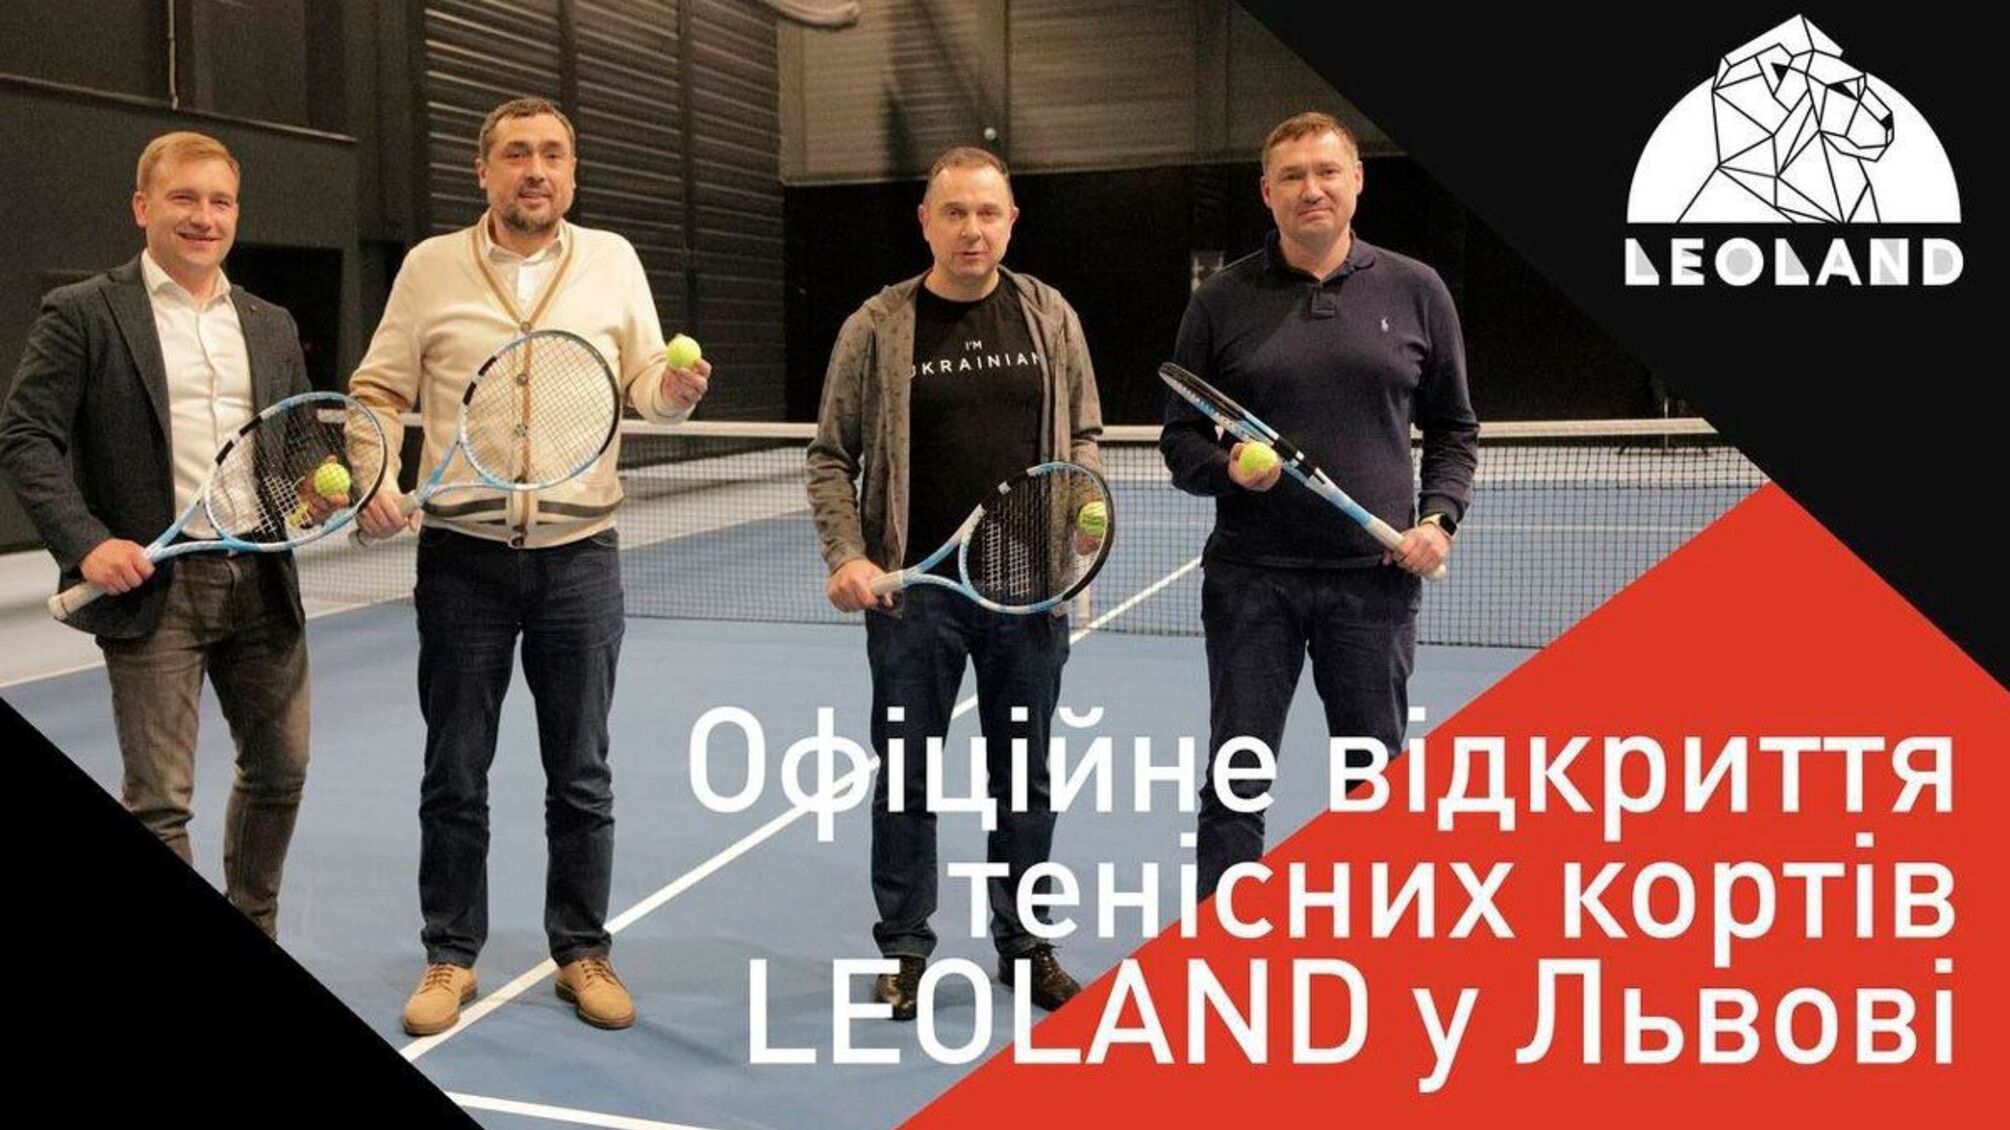 Олександр Свіщов відкрив у Львові нові тенісні корти 'Leoland': подробиці